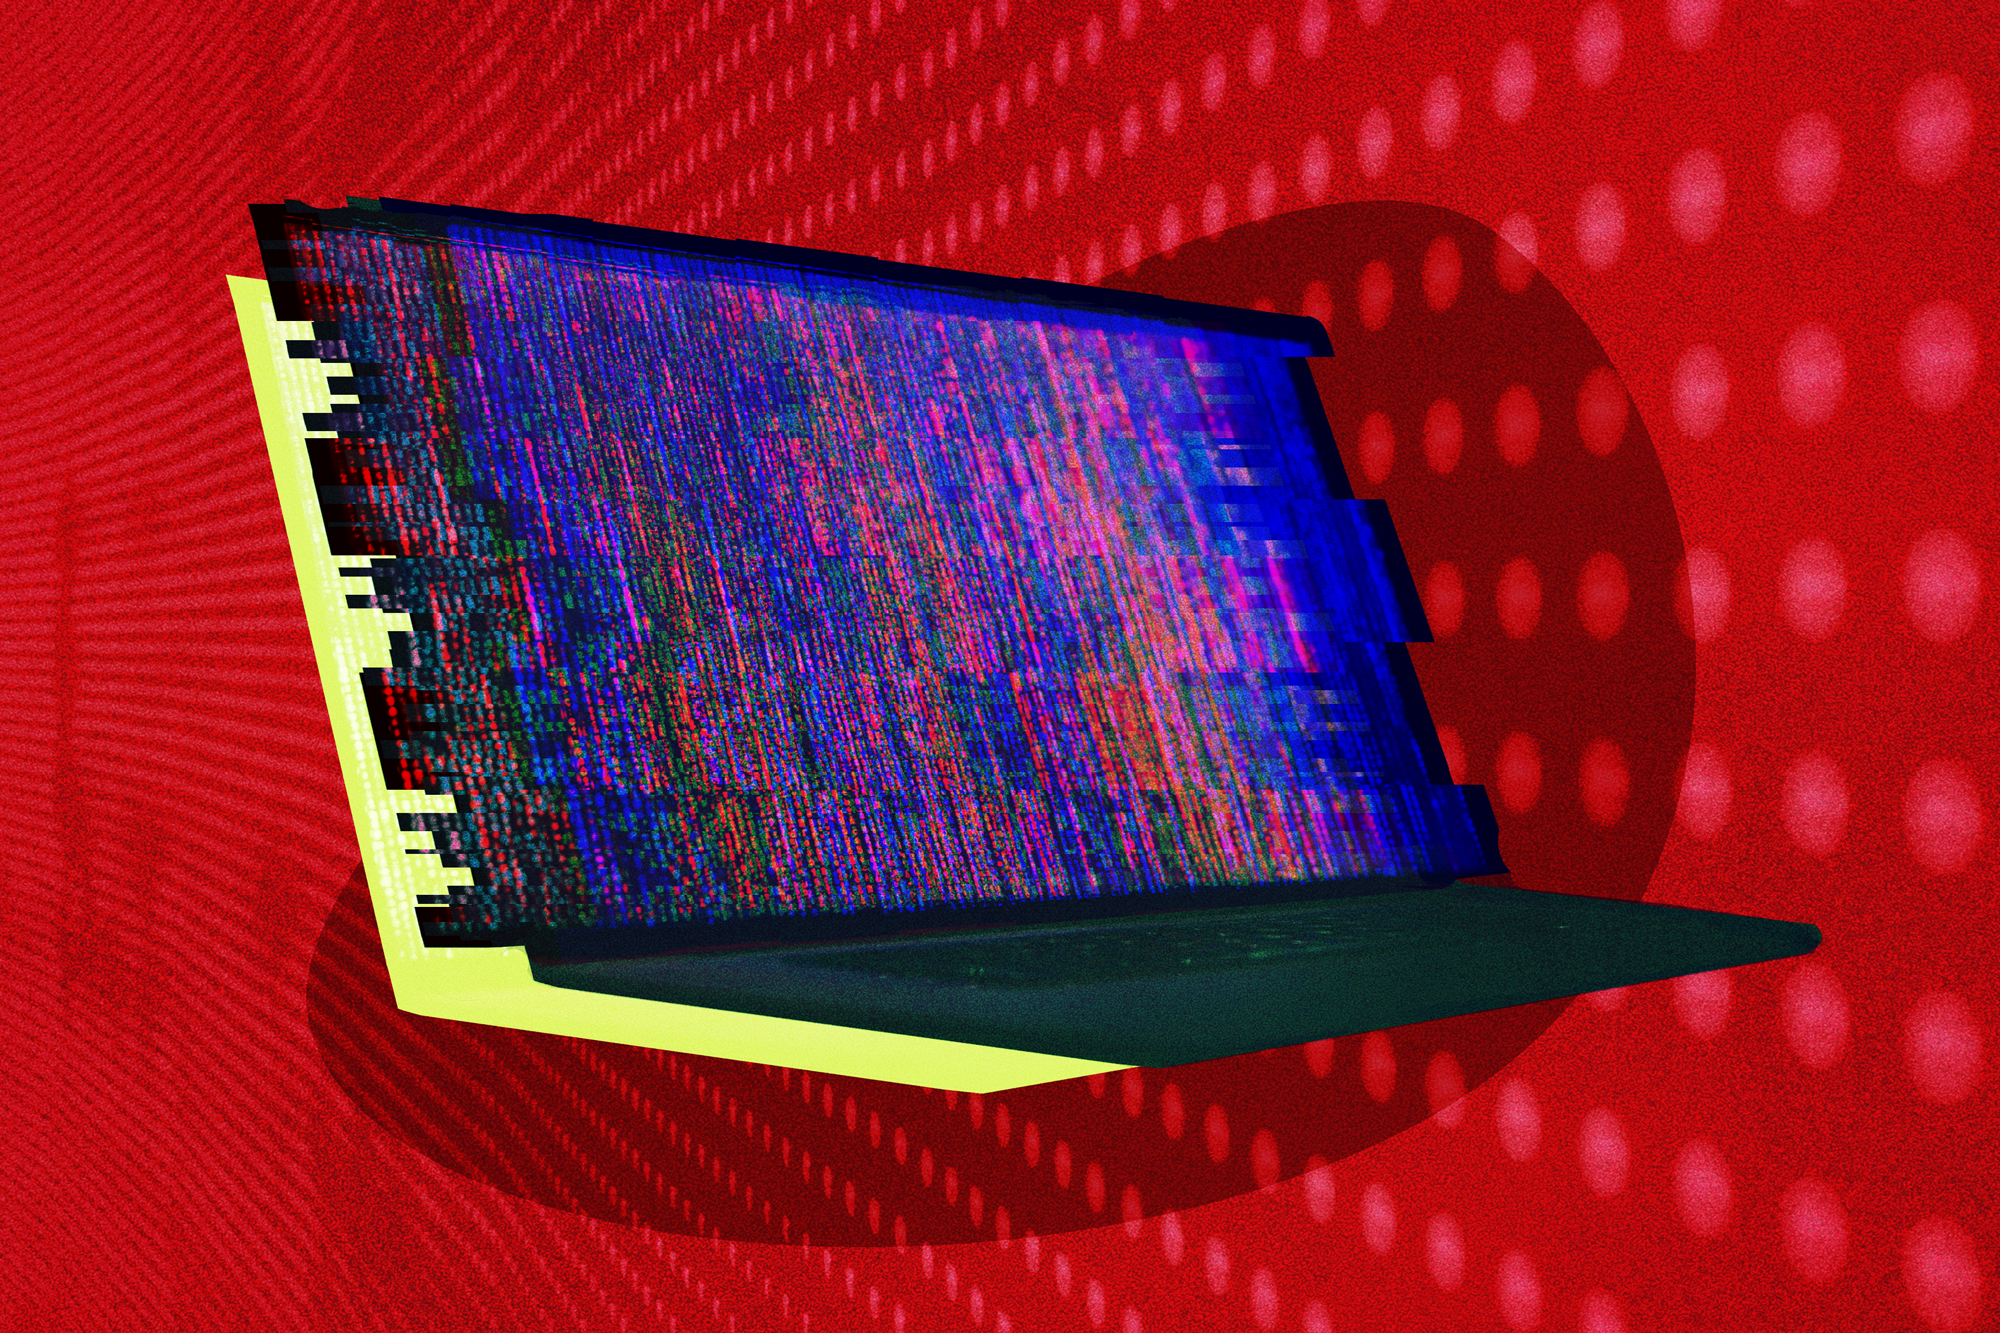 Uma representação digital de um laptop sendo invadido por um hacker.